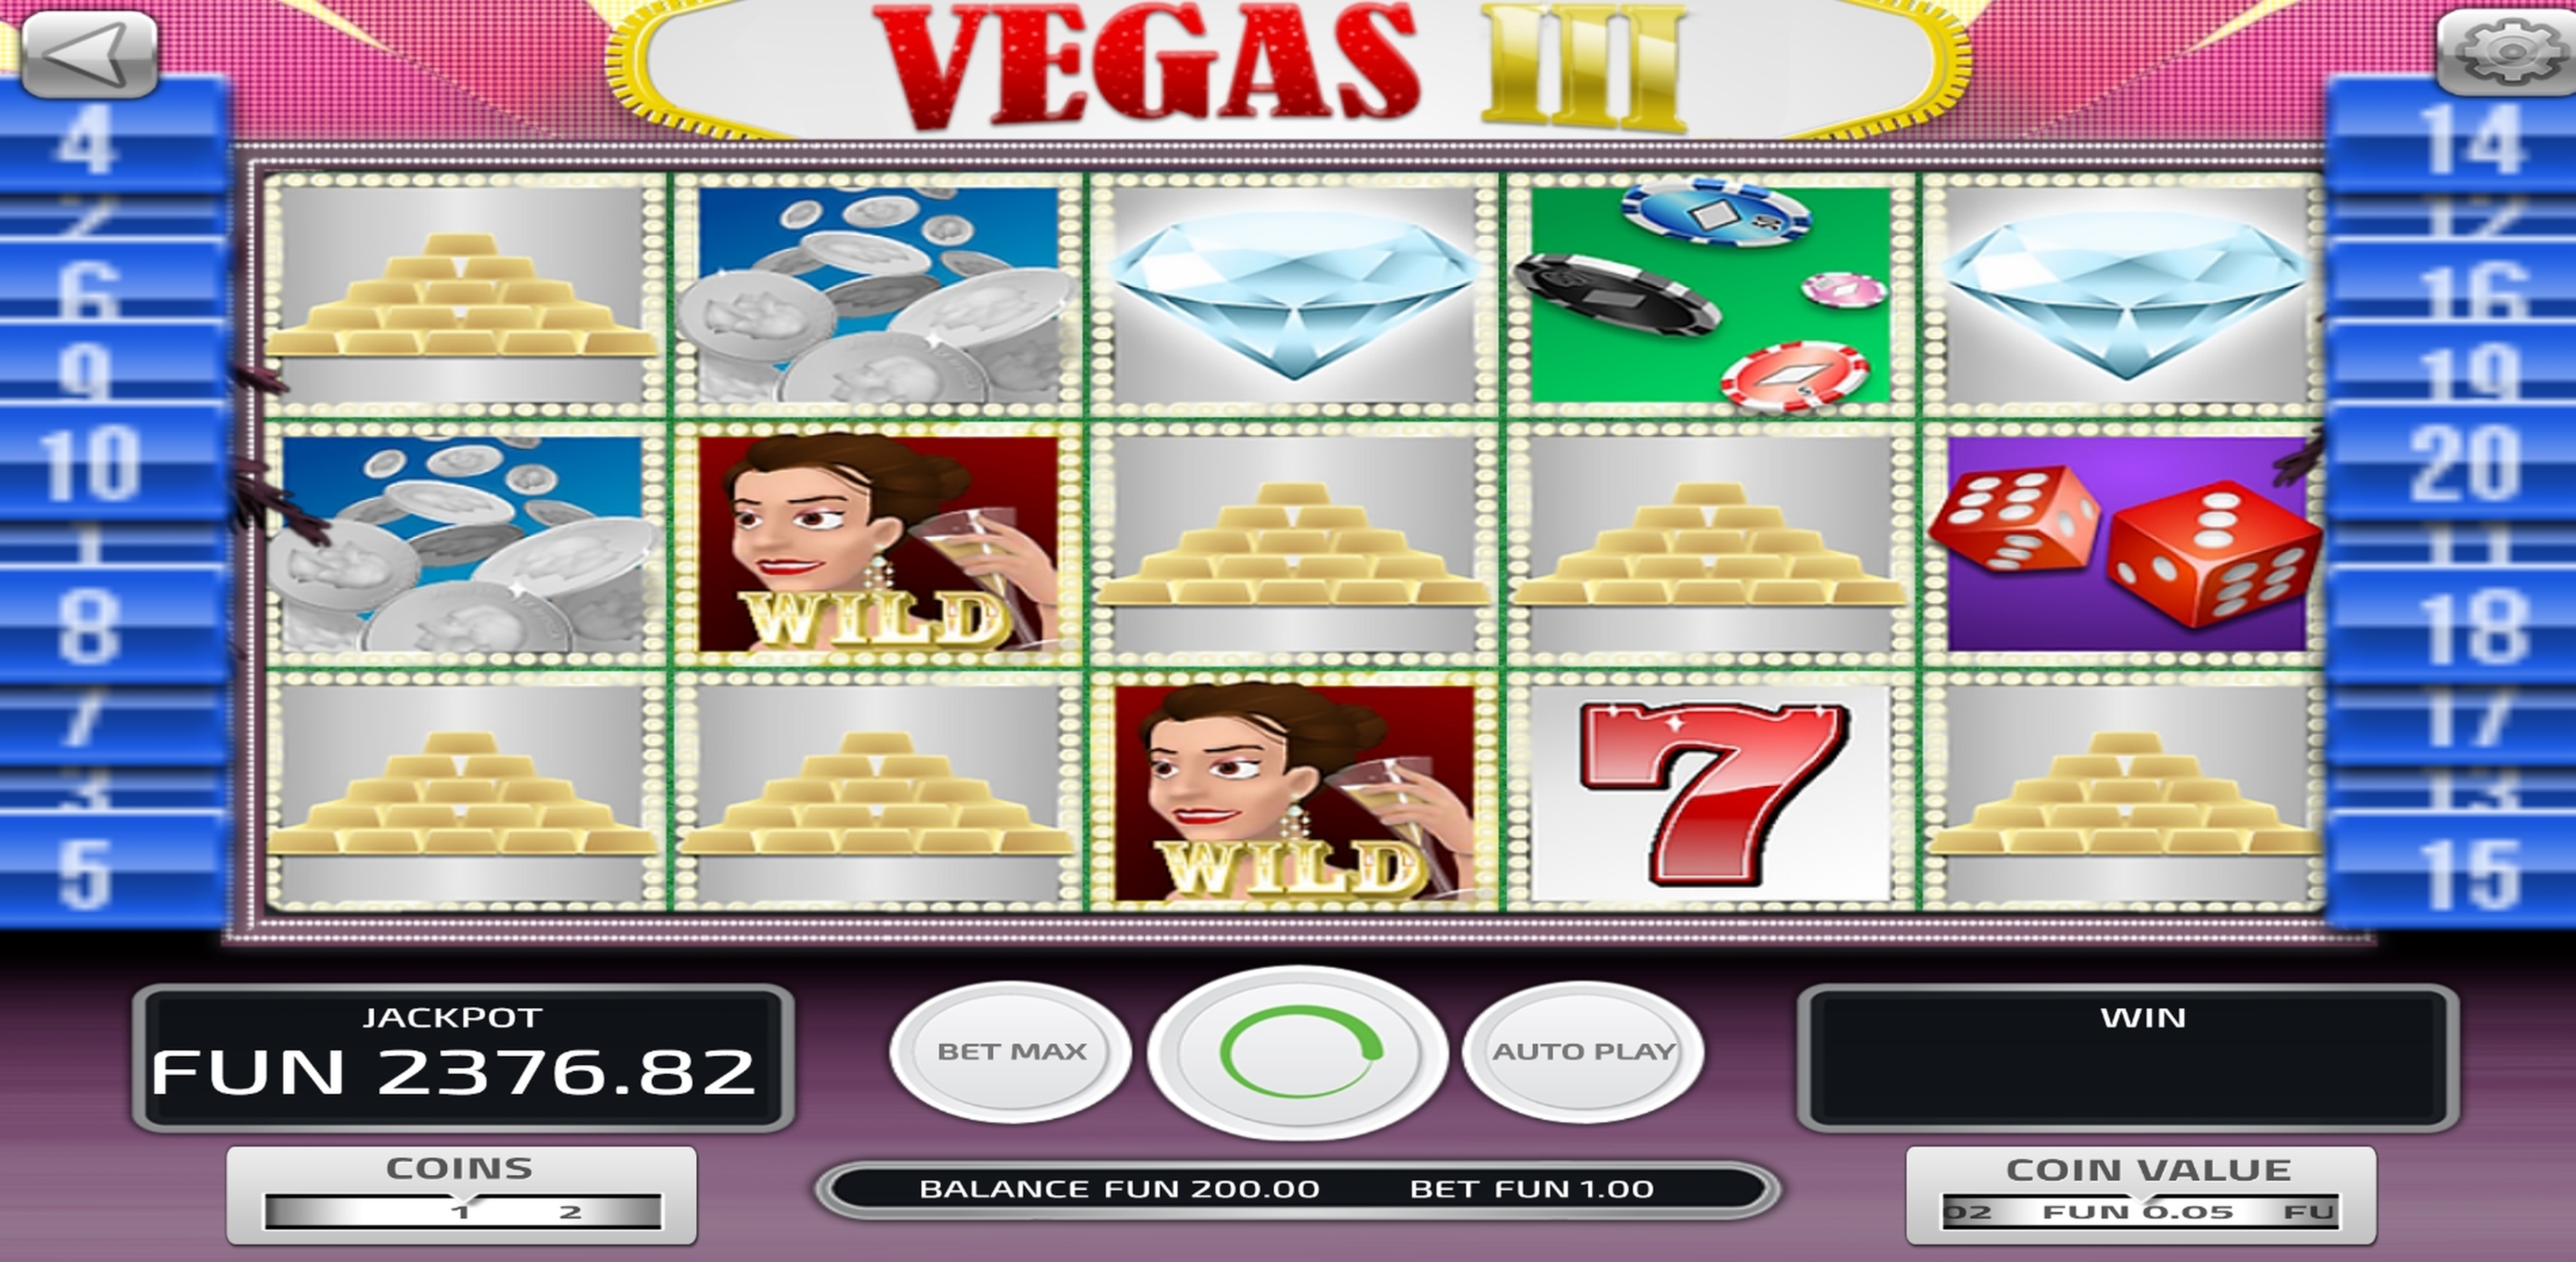 Vegas III demo